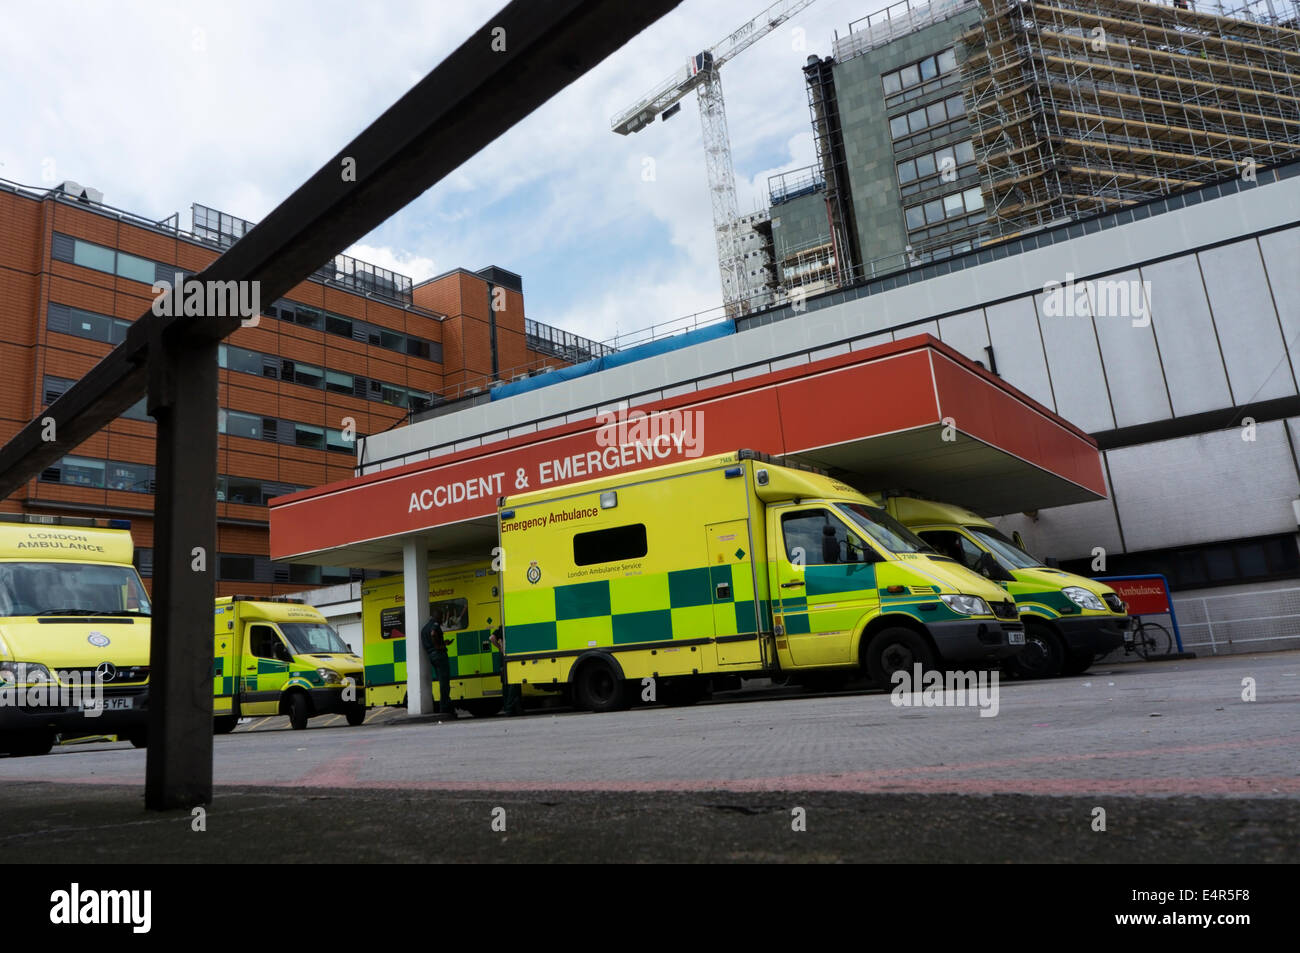 Les ambulances stationné à l'extérieur de l'accident et d'urgence entrée de St Thomas' Hospital à Waterloo, Londres. Banque D'Images